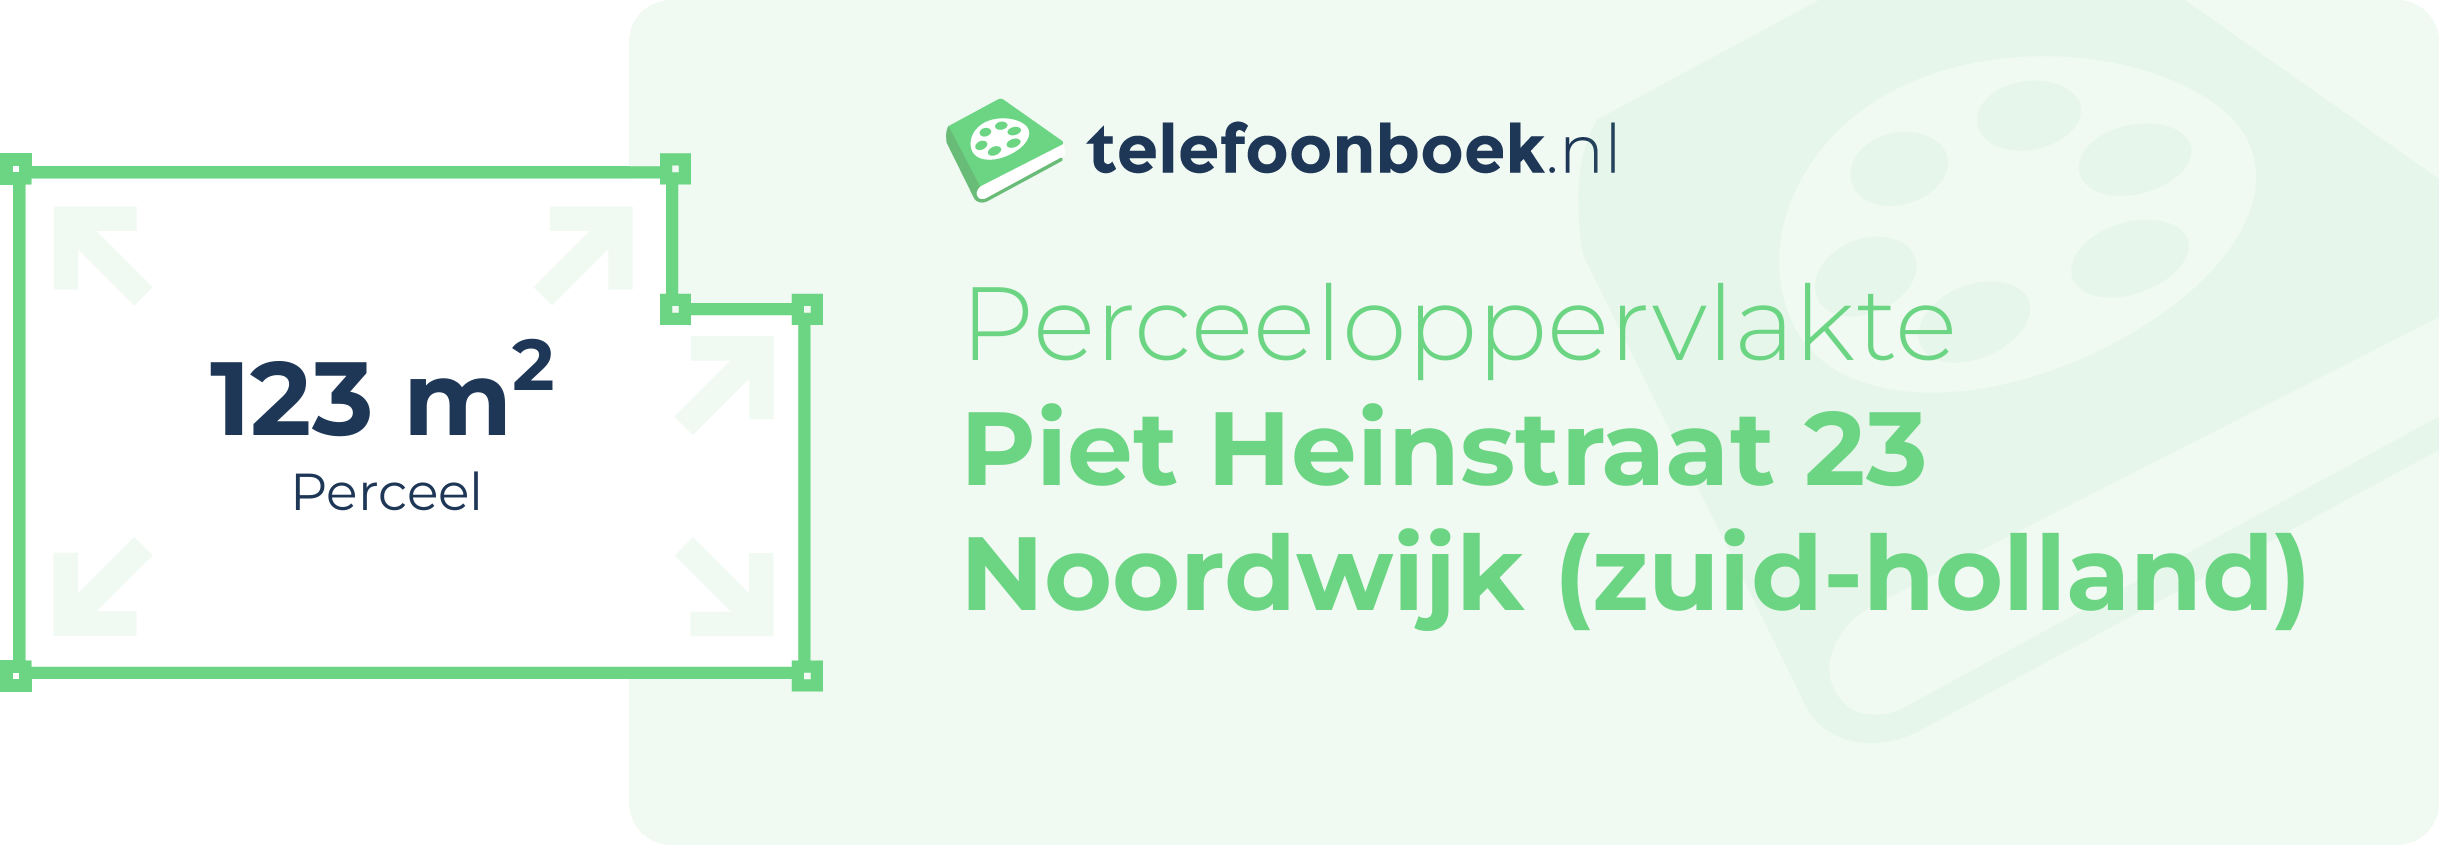 Perceeloppervlakte Piet Heinstraat 23 Noordwijk (Zuid-Holland)